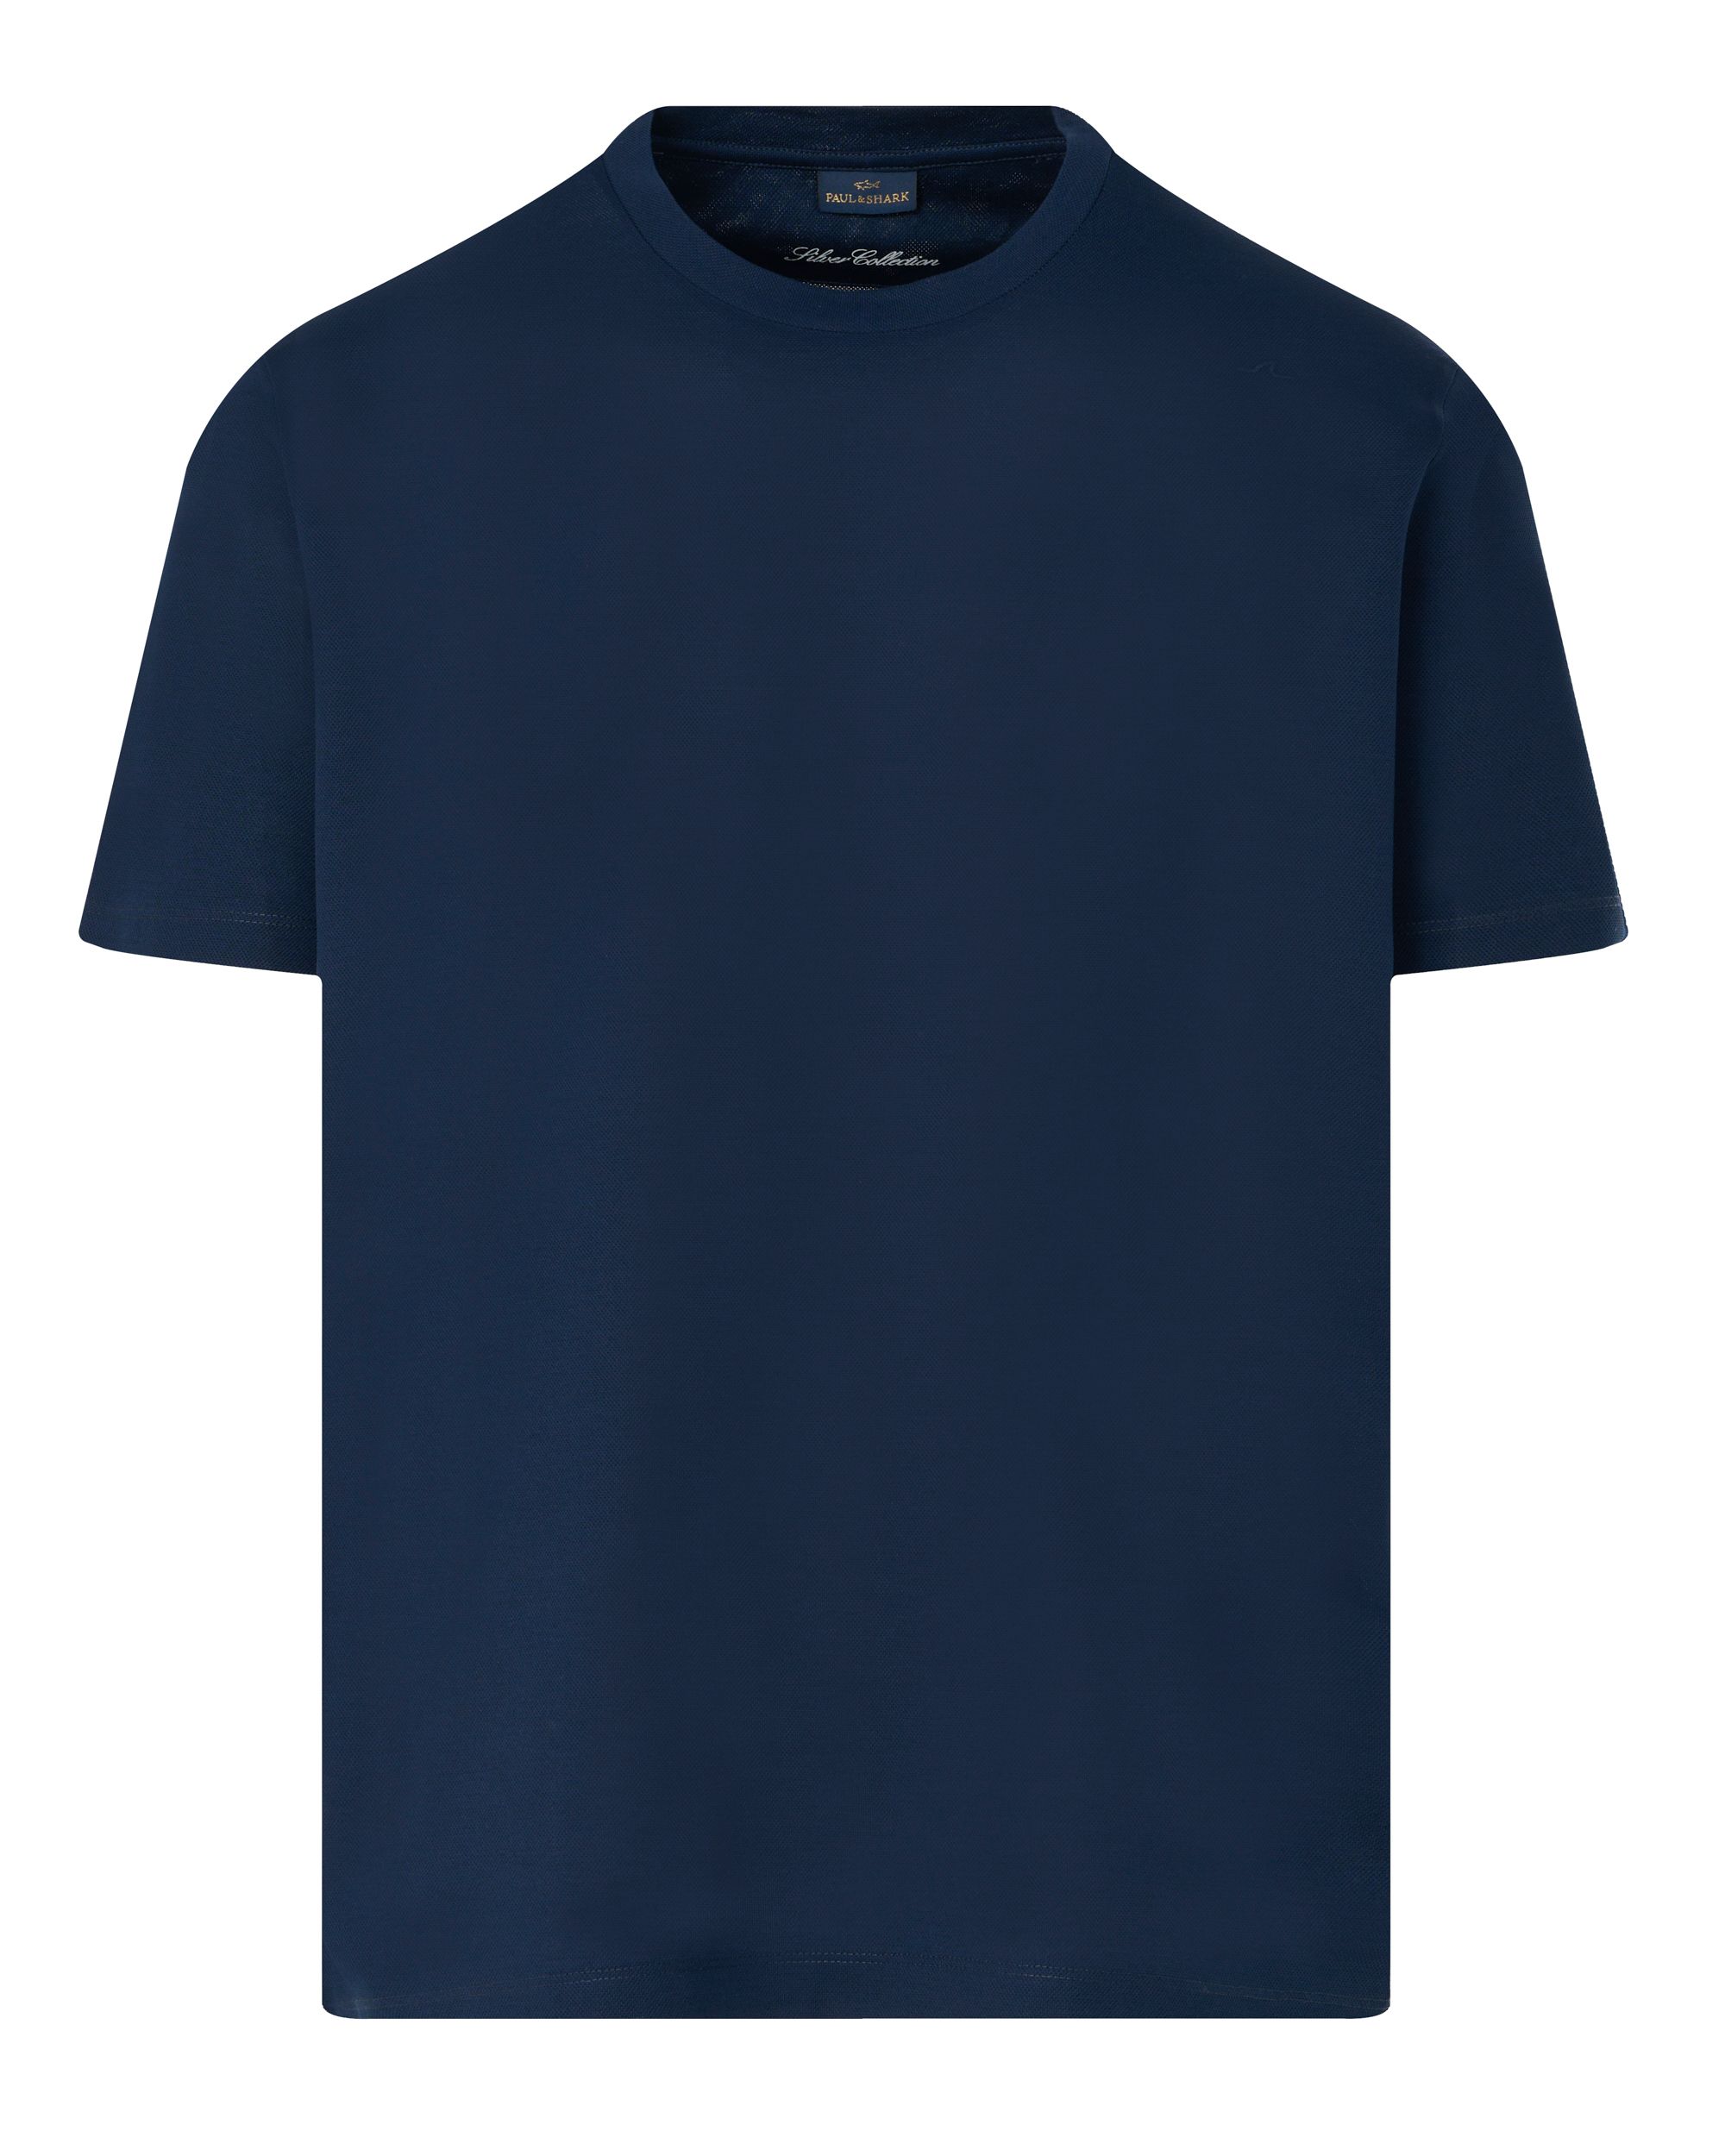 Paul & Shark T-shirt KM Donker blauw 092046-001-S